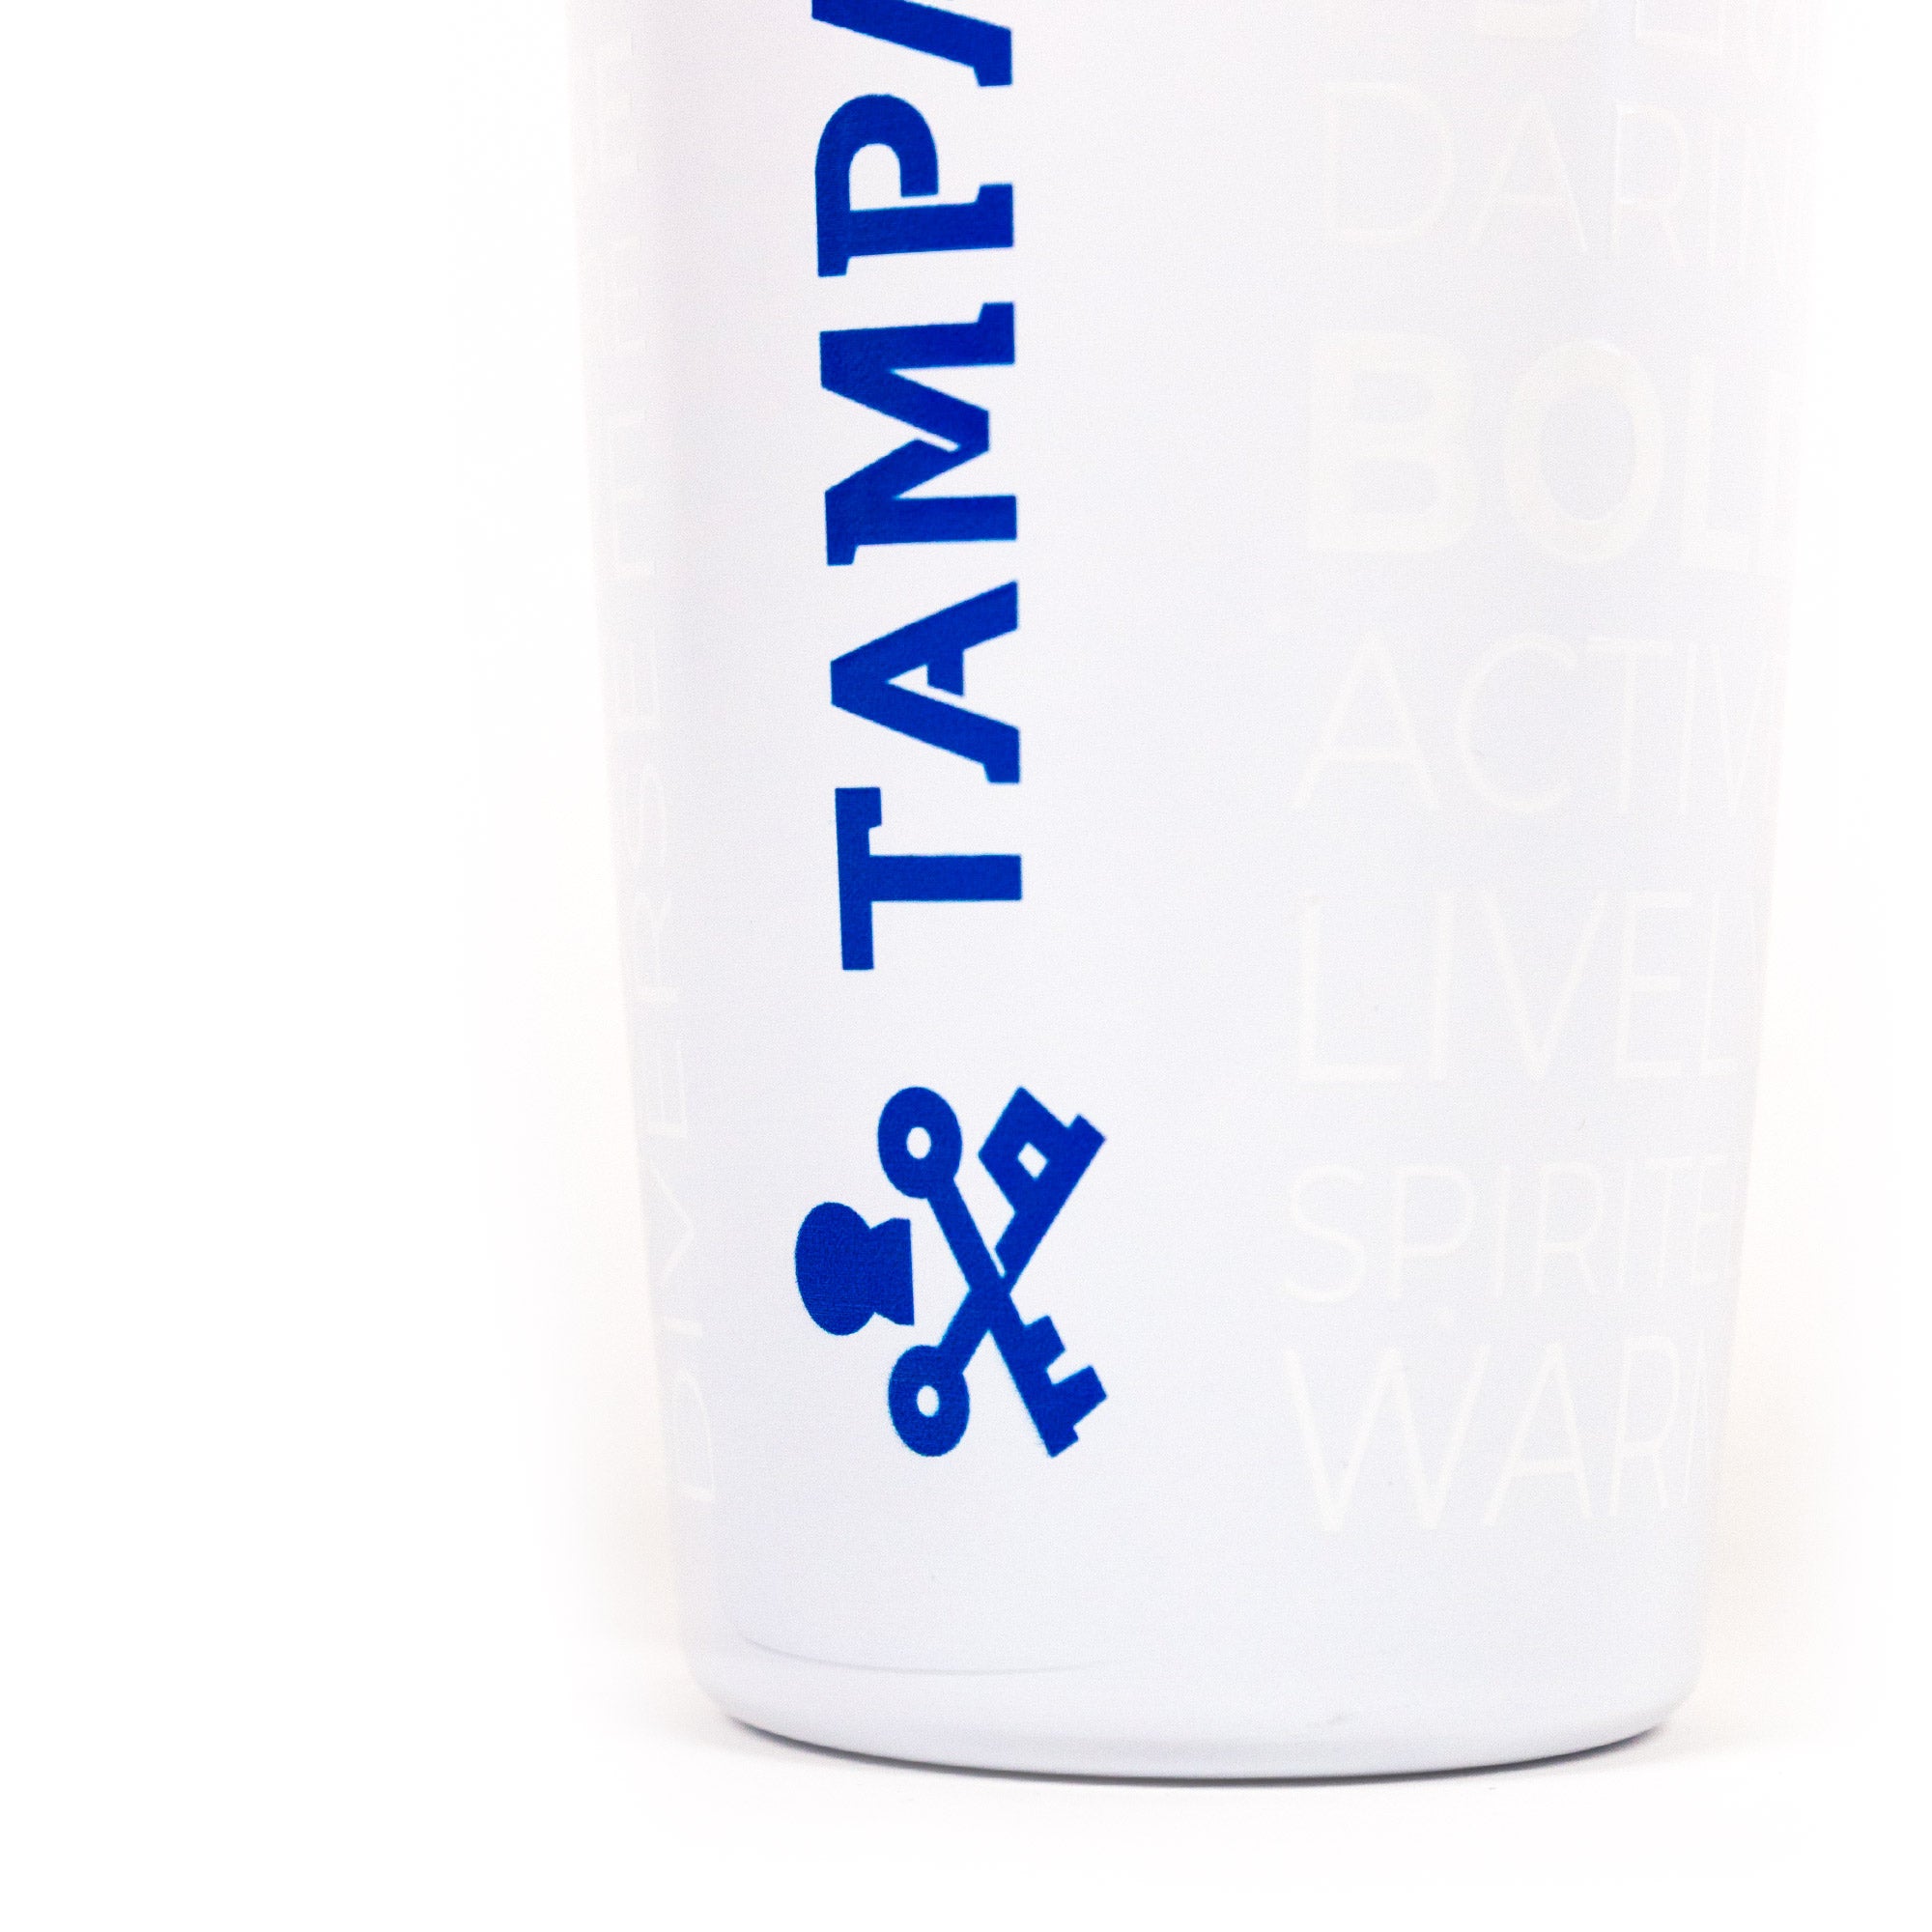 Tampa Bay White Tumbler - 20 oz